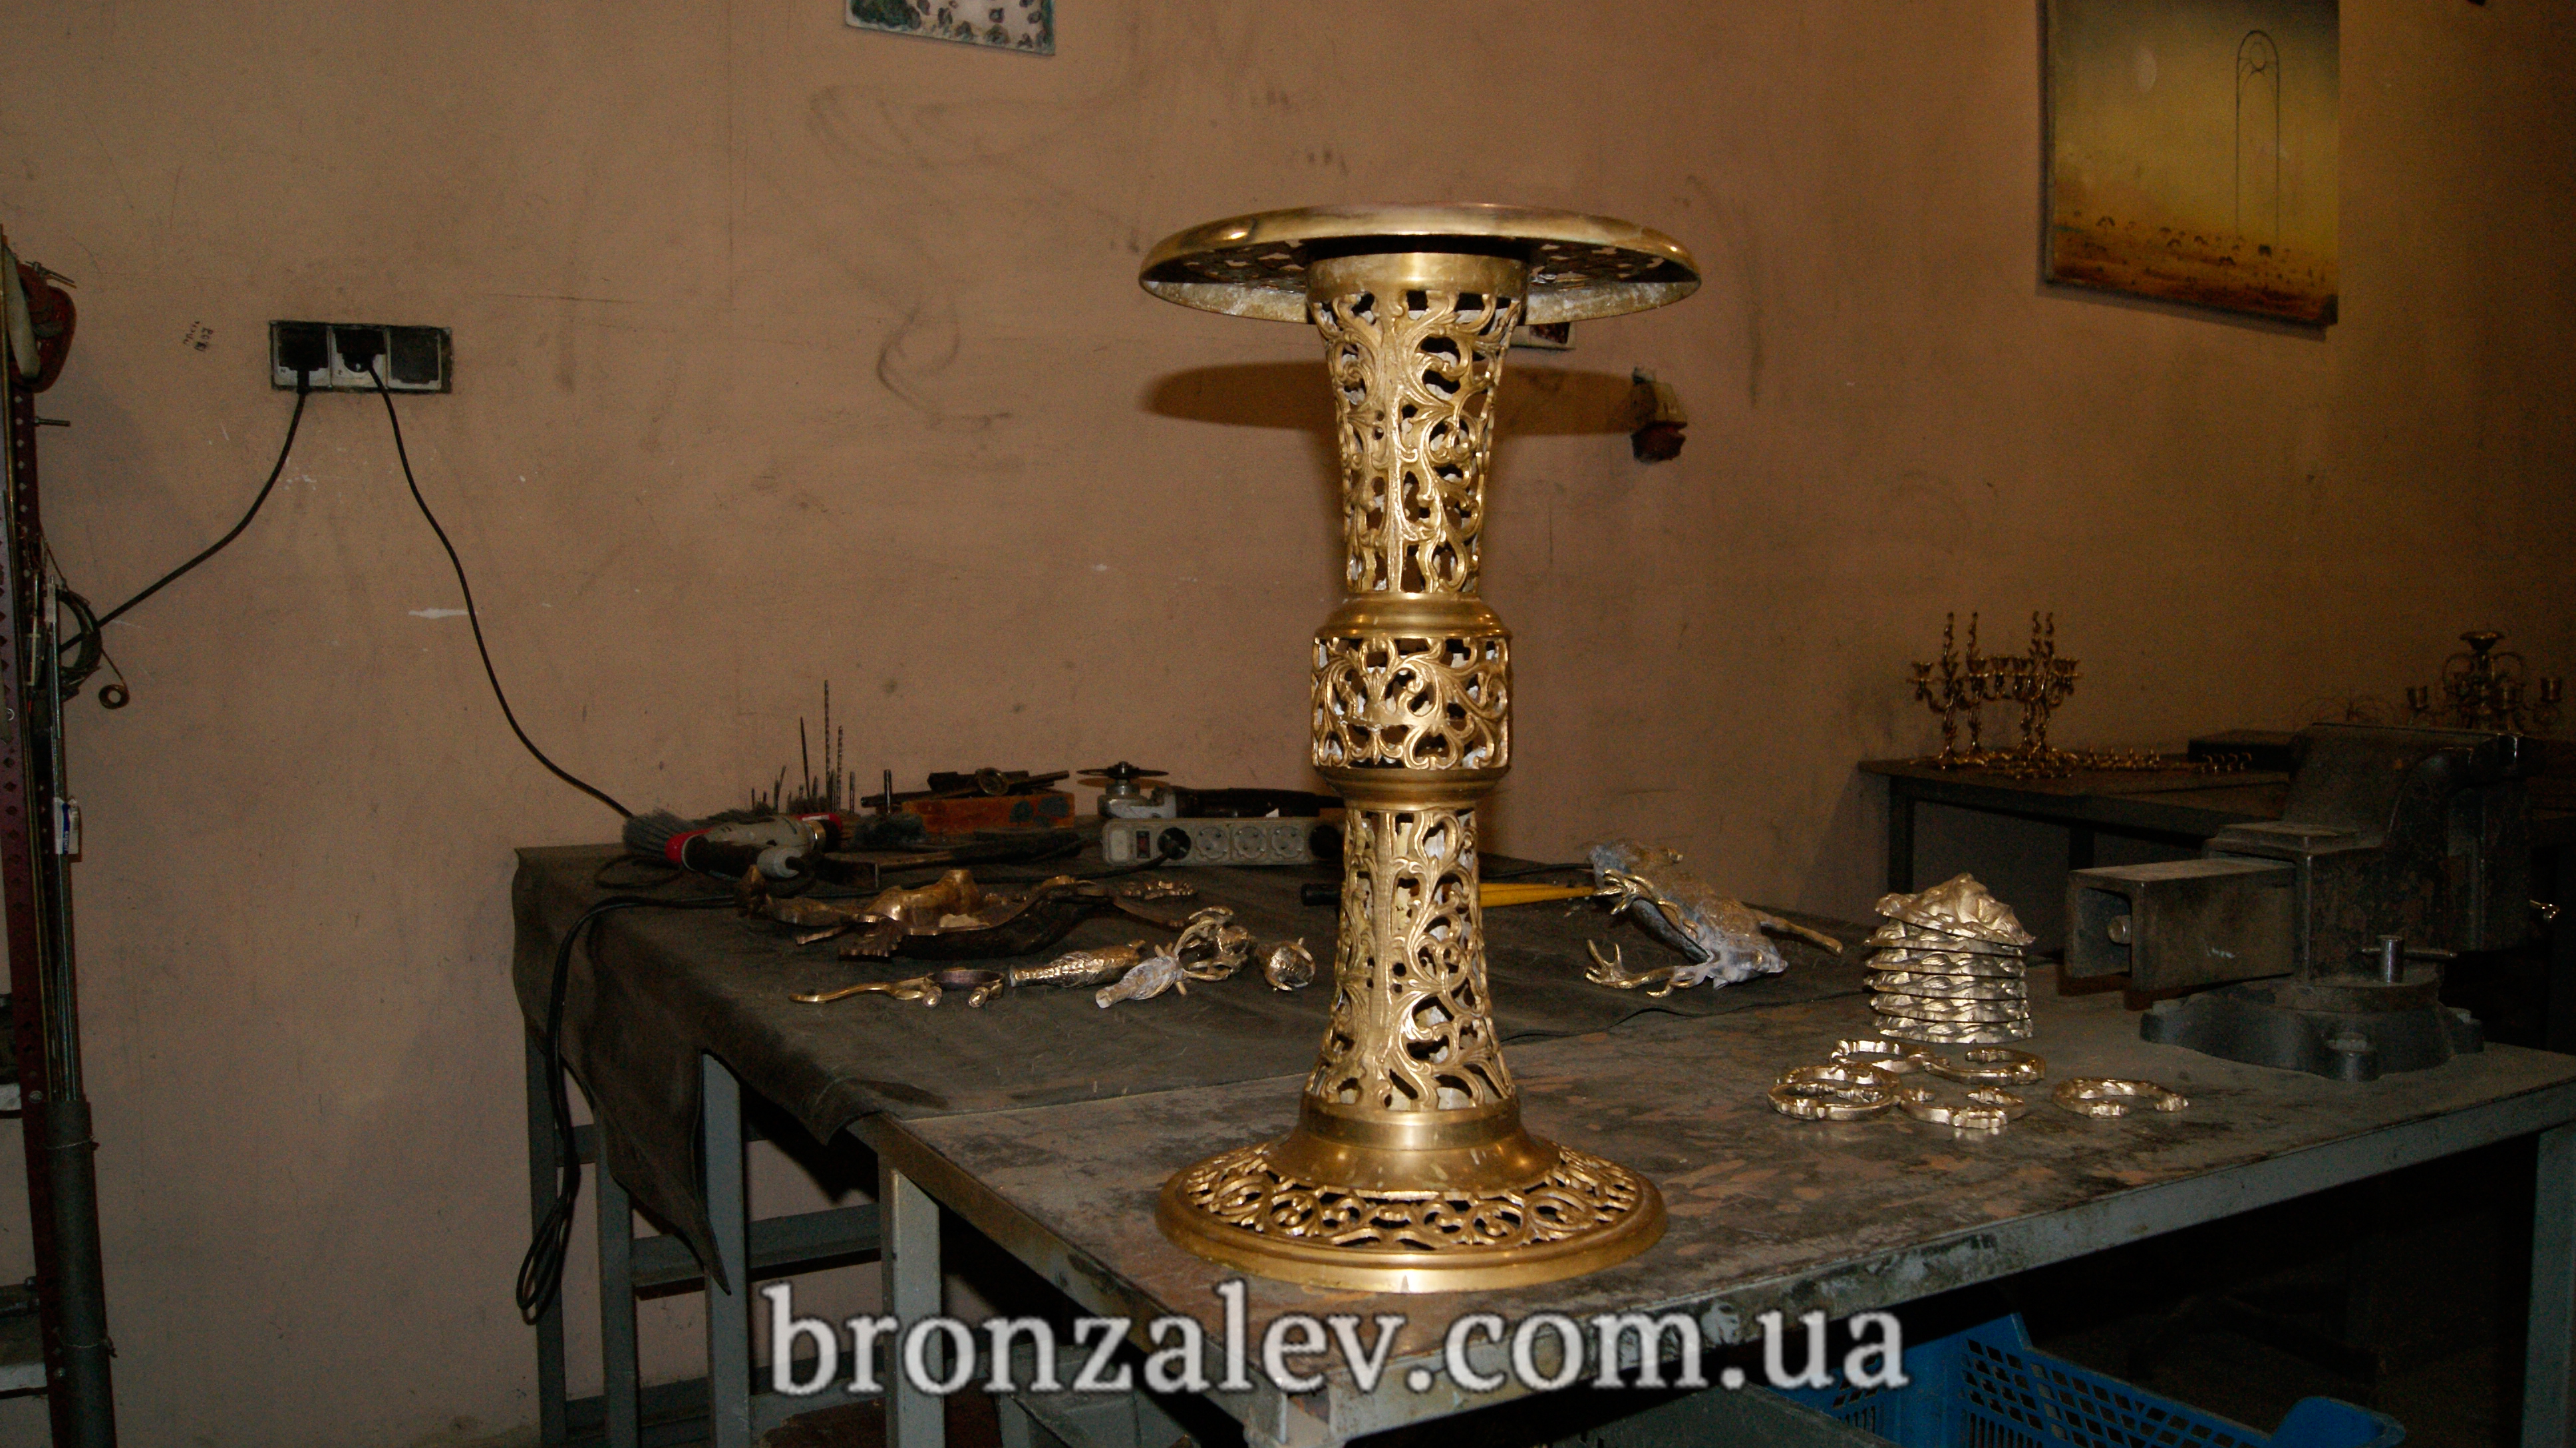 Реставрация бронзовых изделий